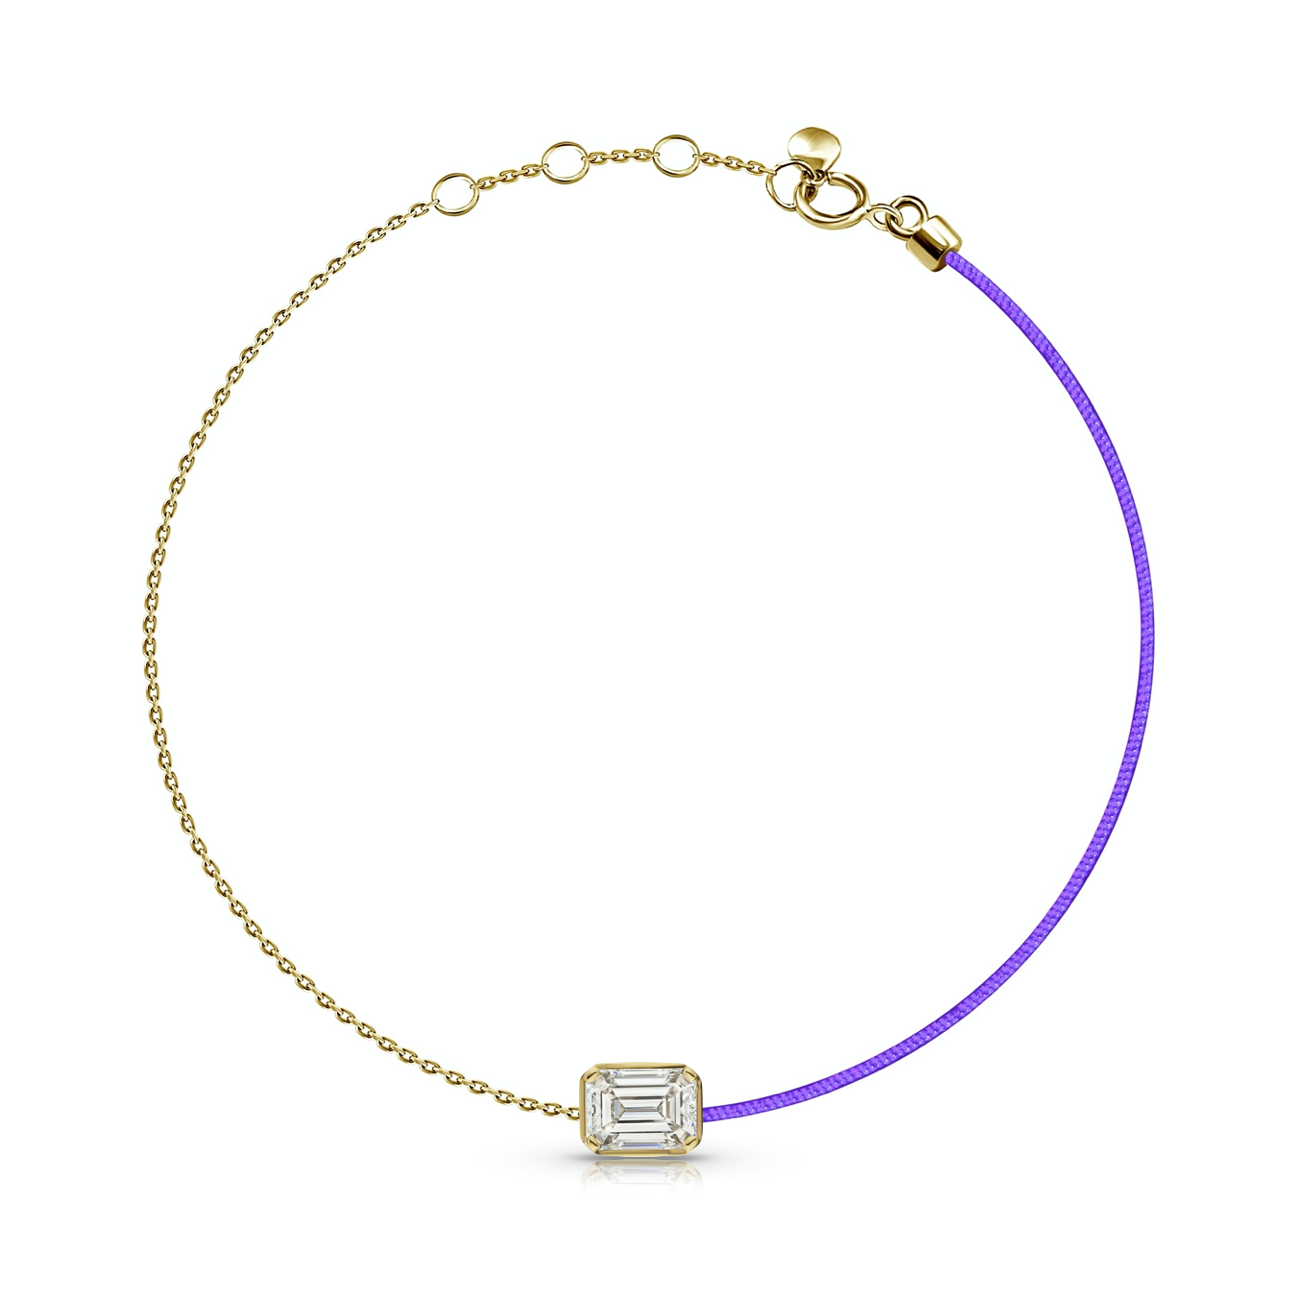 18k Fancy Diamond Bezel Chain/Silk Cord Bracelet